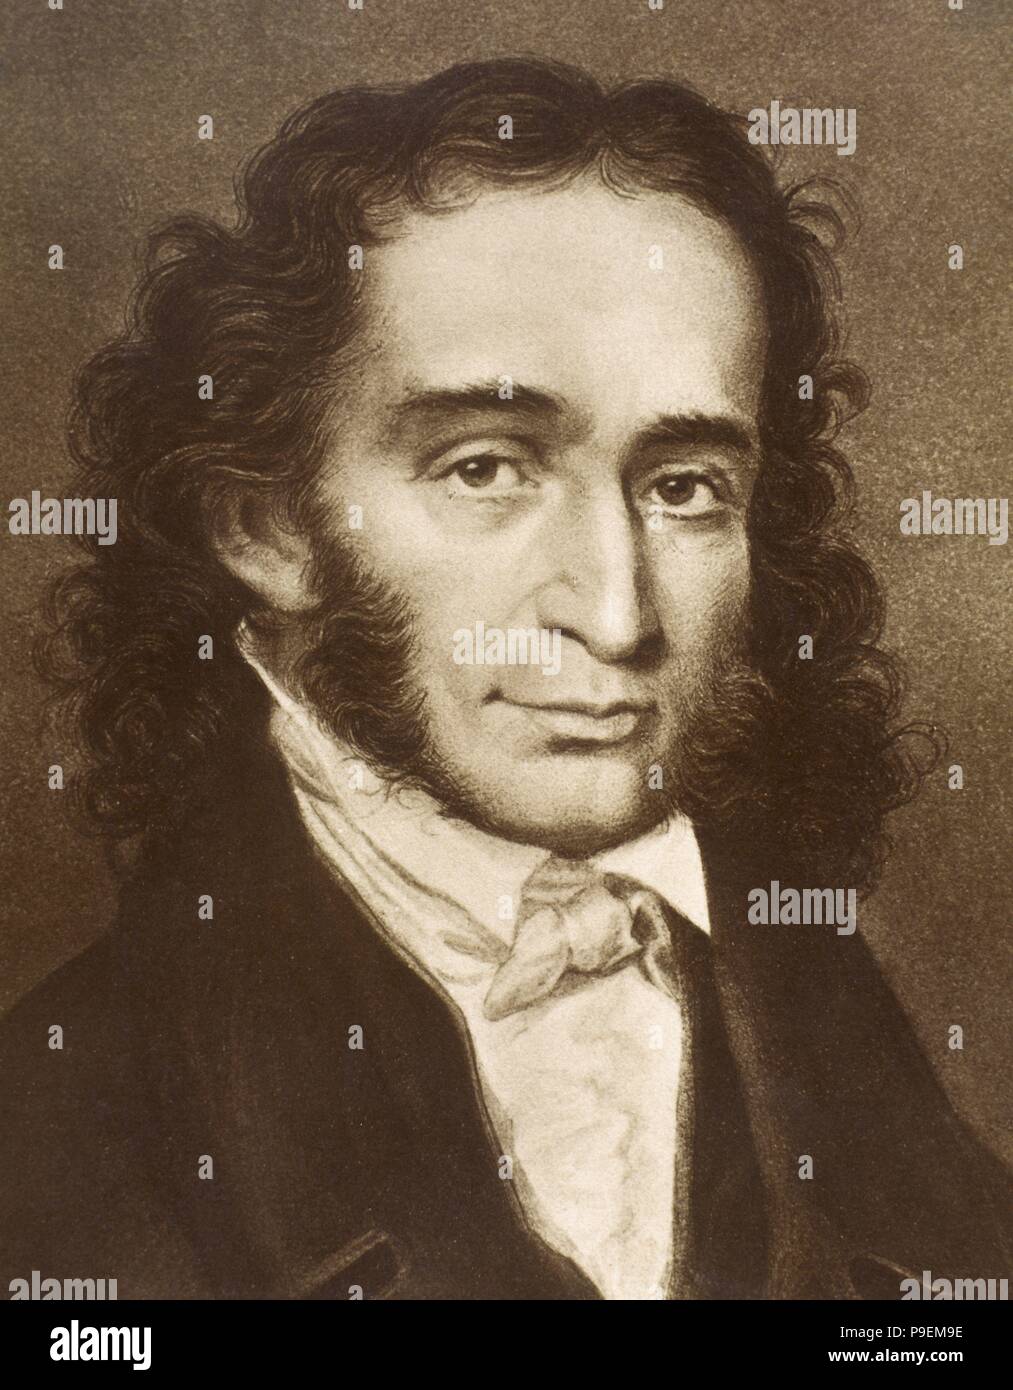 Niccolo Paganini (1782-1840). Italian violinist, violist, guitarist, and composer. Portrait. Engraving. Stock Photo